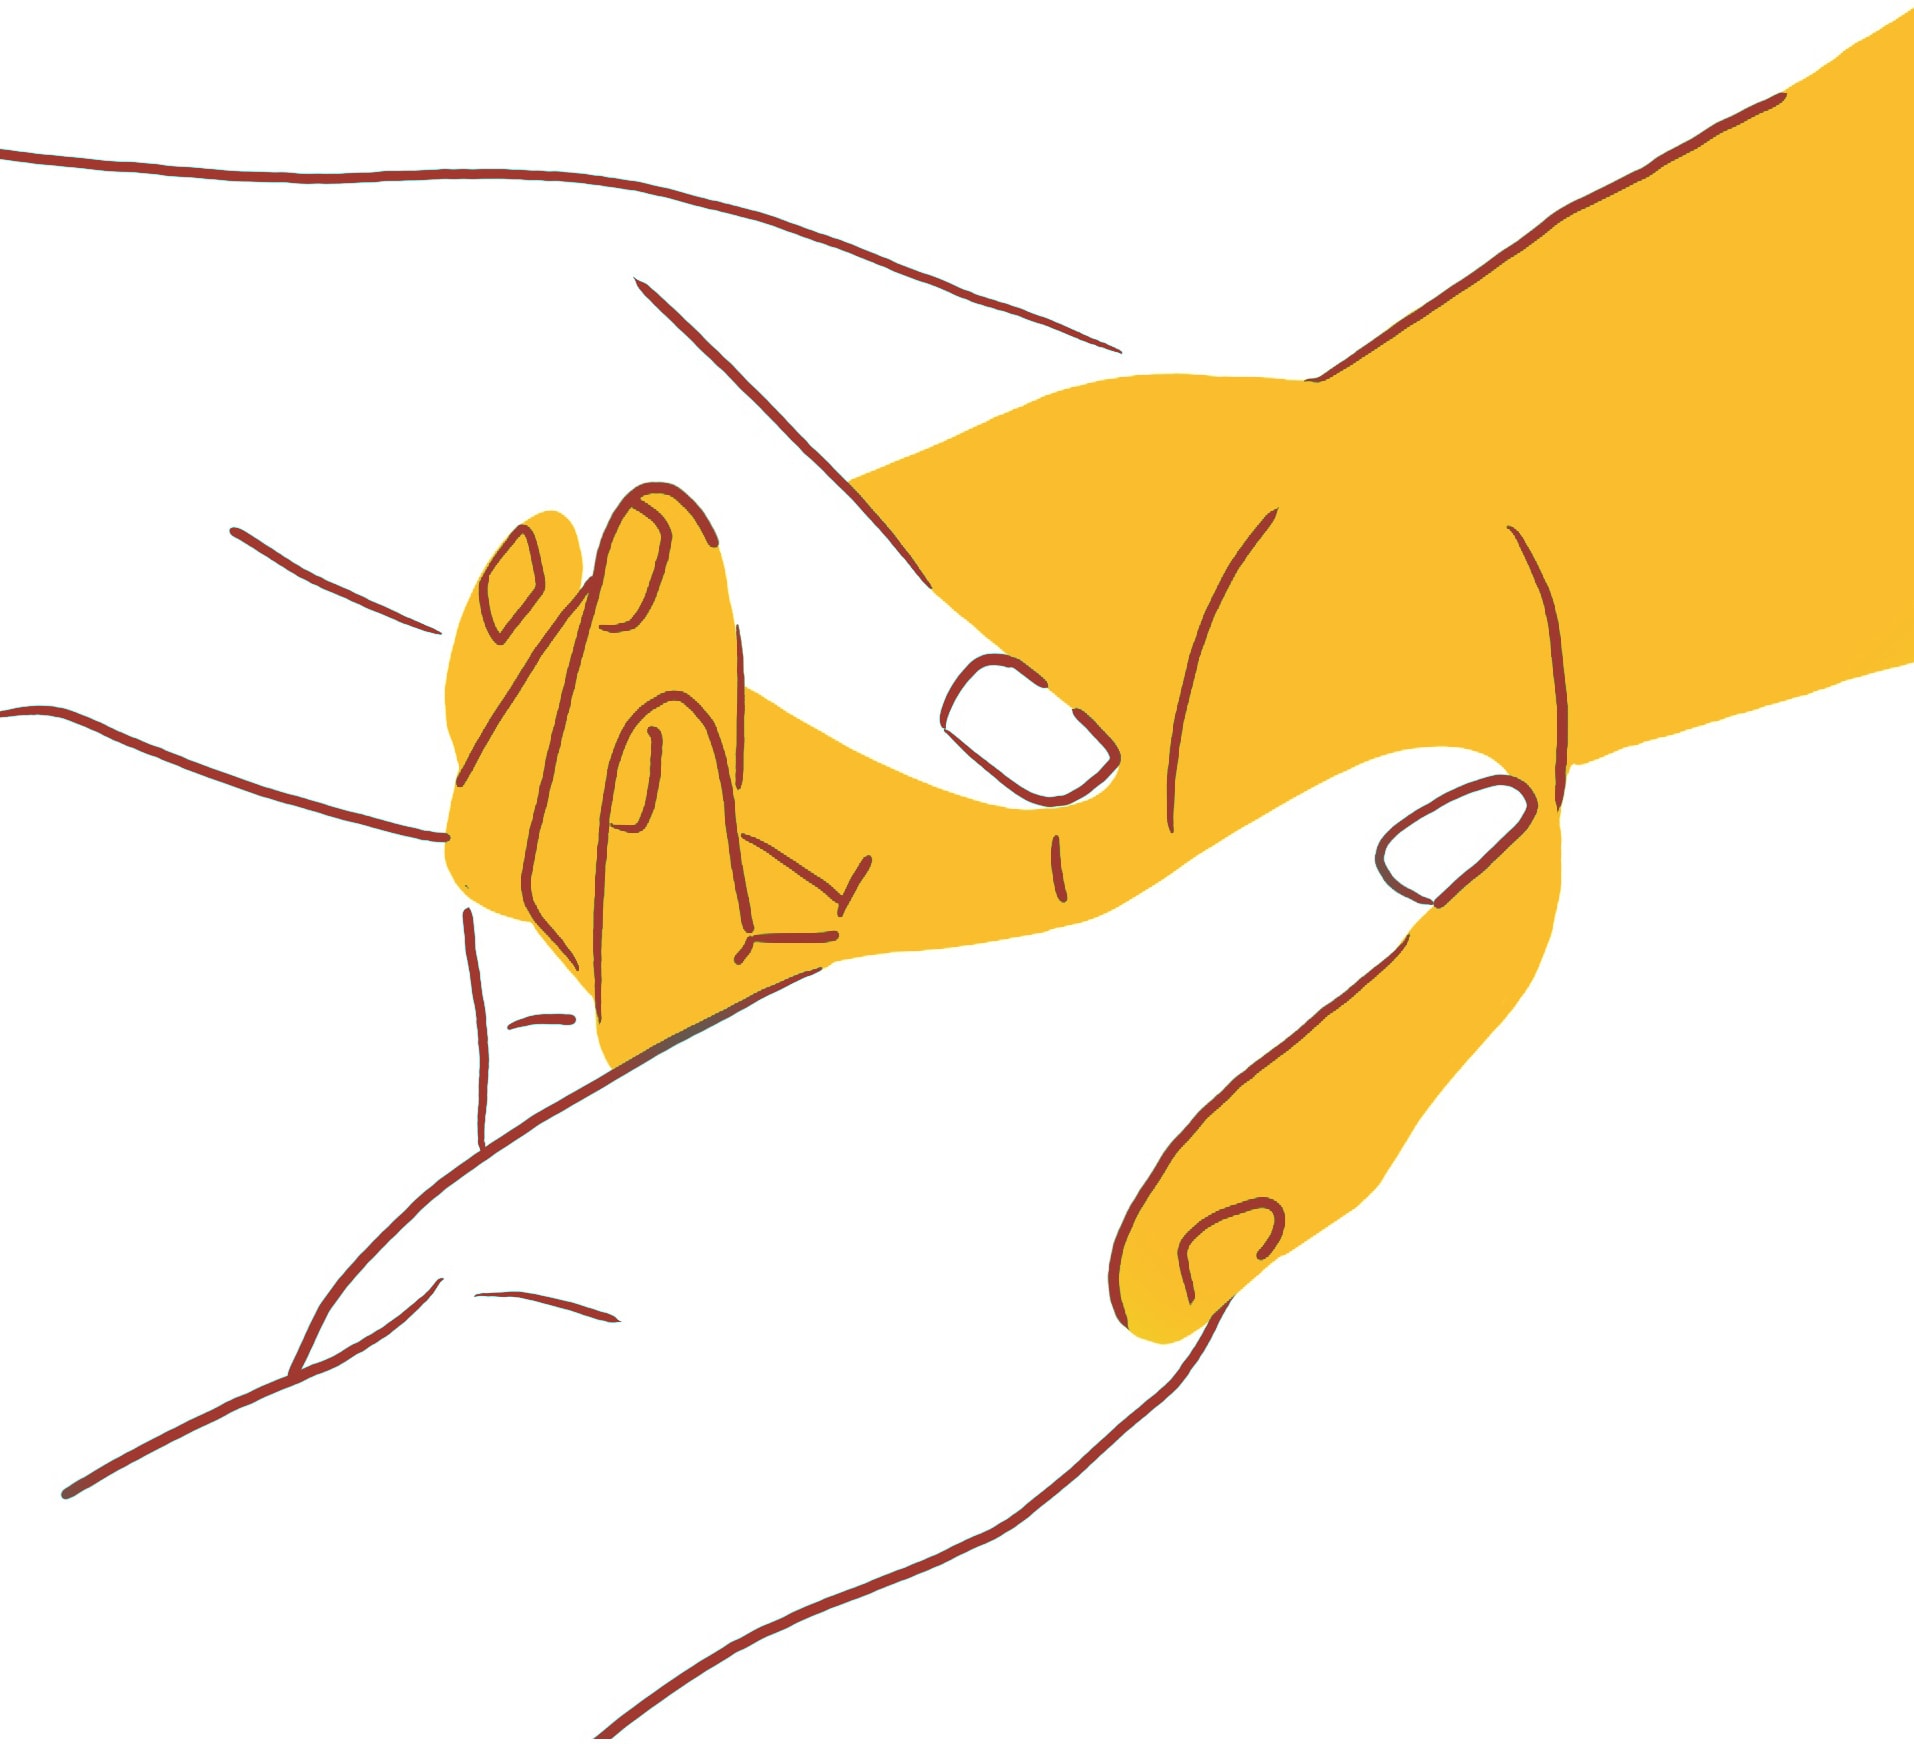 Handmassage: Abbildung einer Hand, die sanft eine andere Hand hält. Die Hände sind in einem minimalistischen Stil dargestellt, wobei die Hand in einem gelben Farbton gehalten wird und die Hand, die sie hält, in Weiß, beide mit einer bräunlich-roten Linie umrandet.